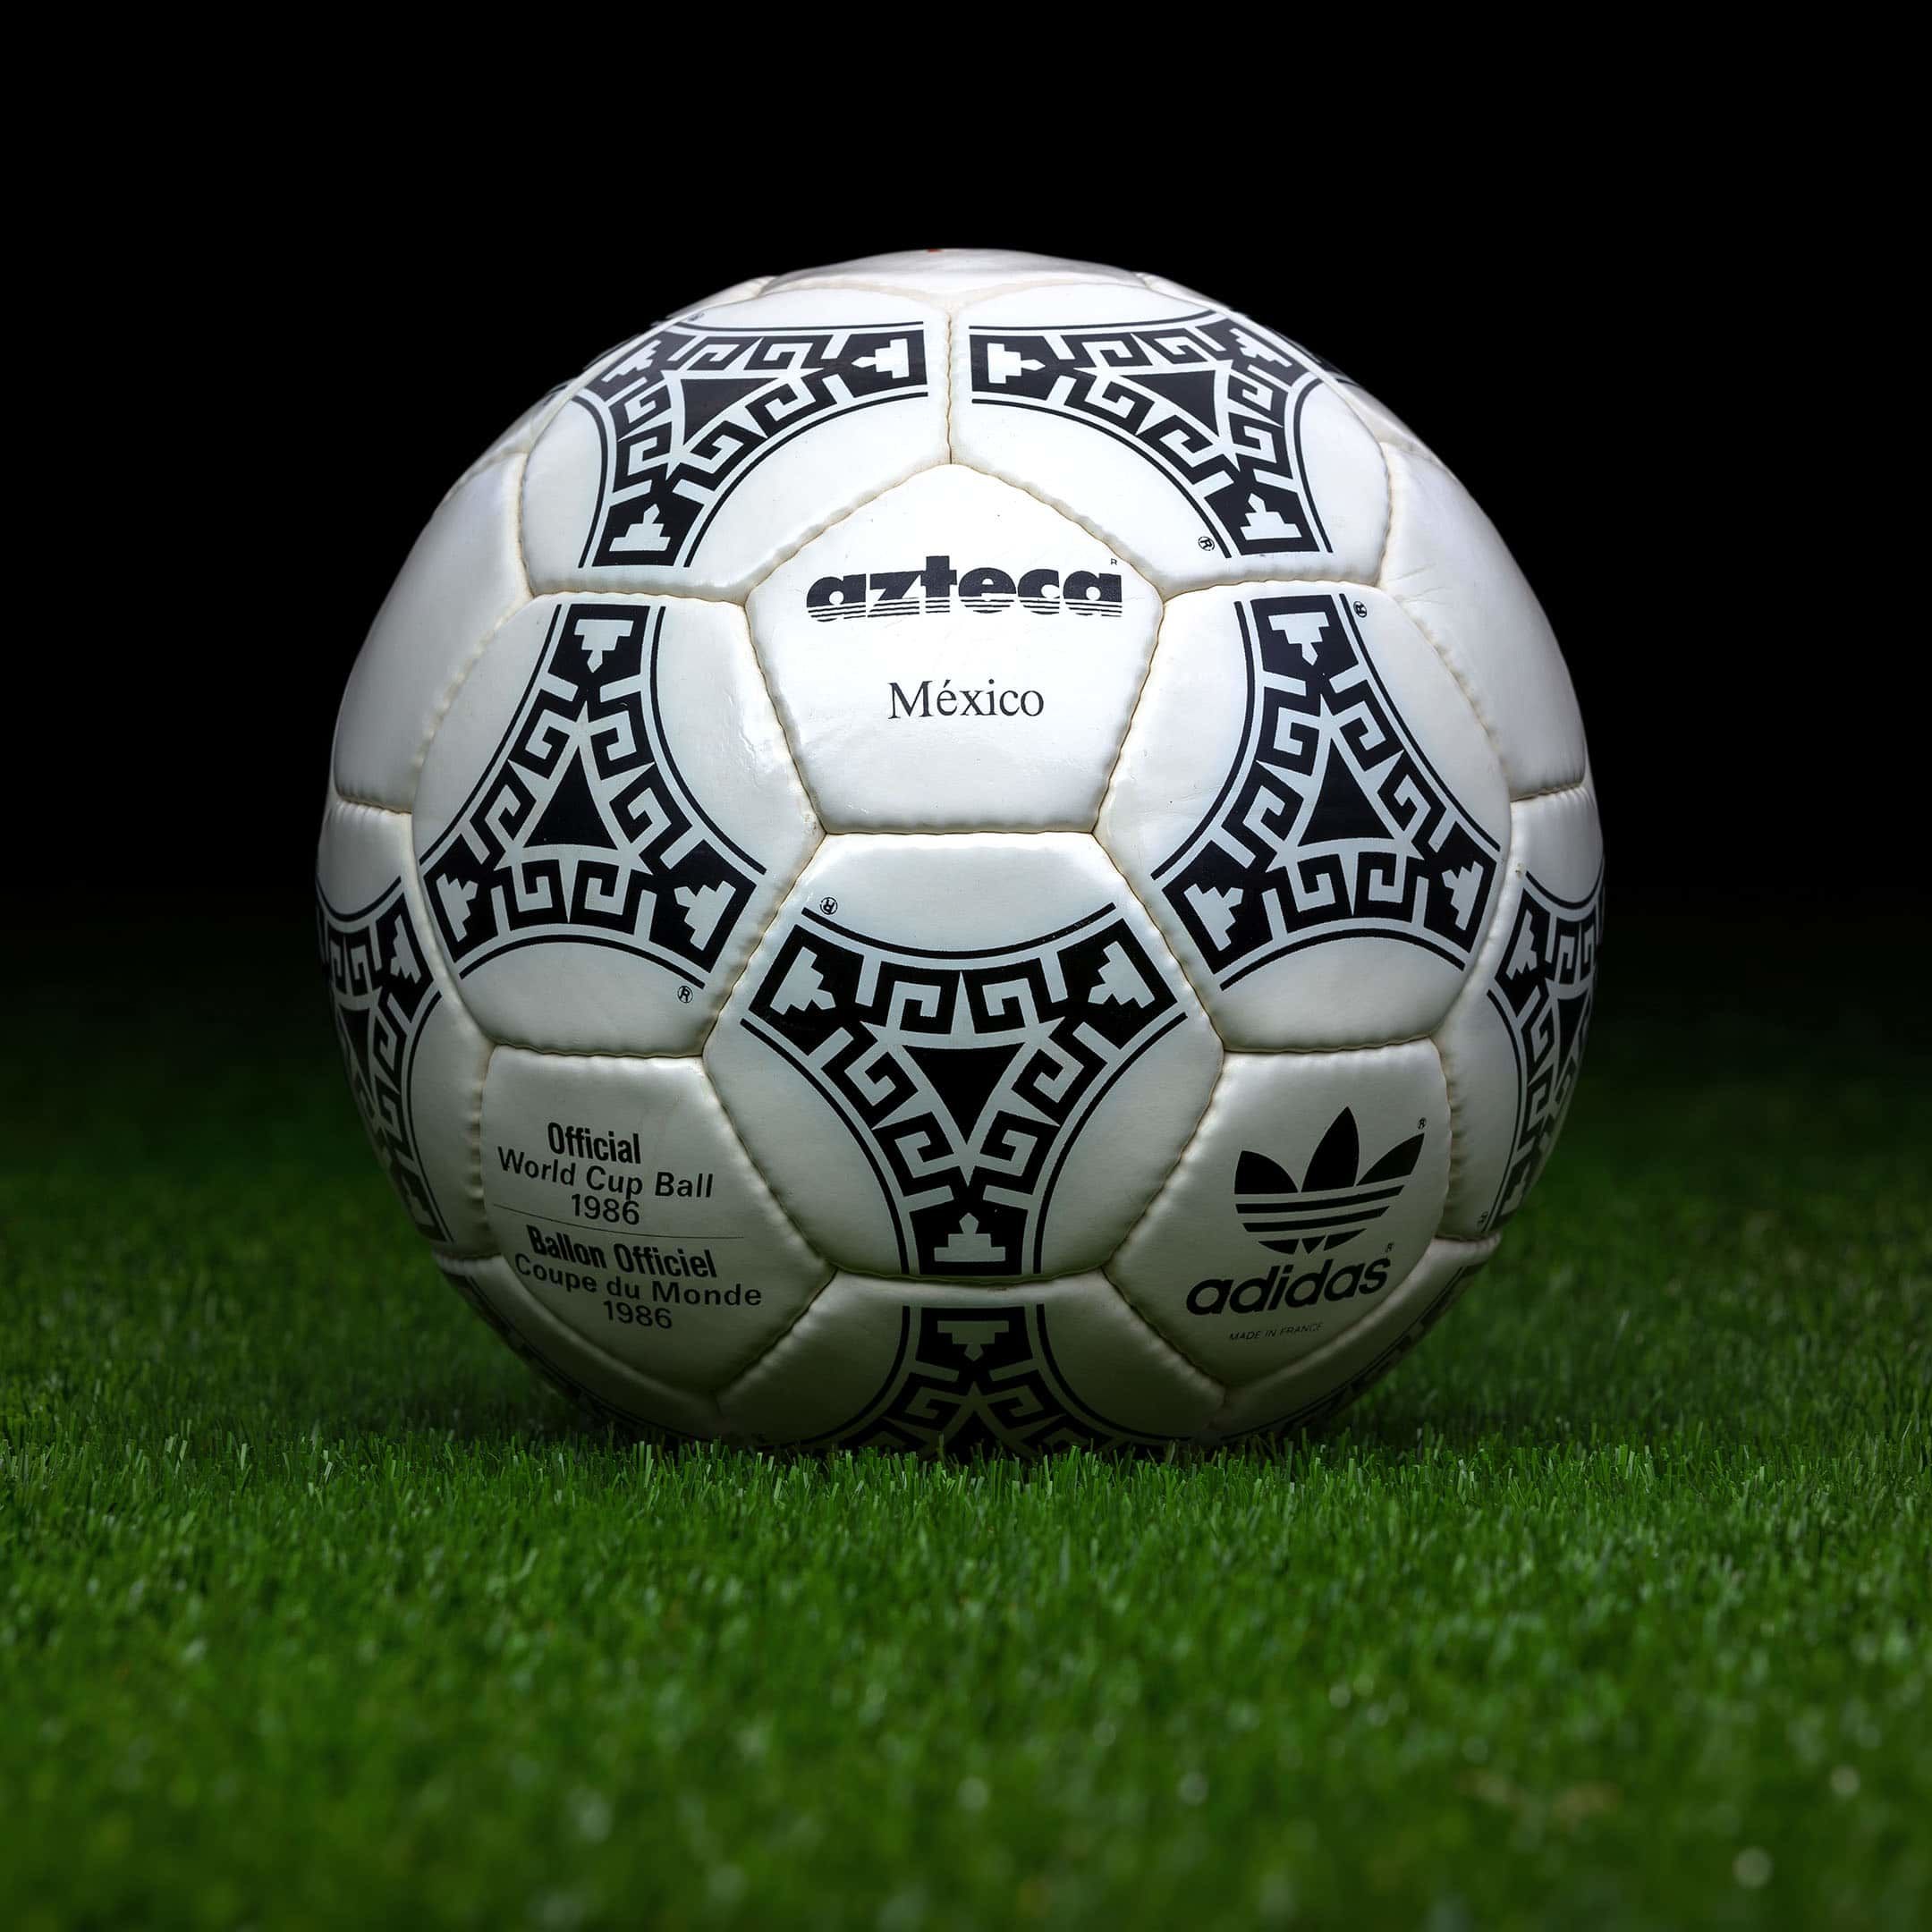 Le ballon Azteca produit par Adidas pour la coupe du monde organisée au Mexique en 1986. © worldcupballs.info